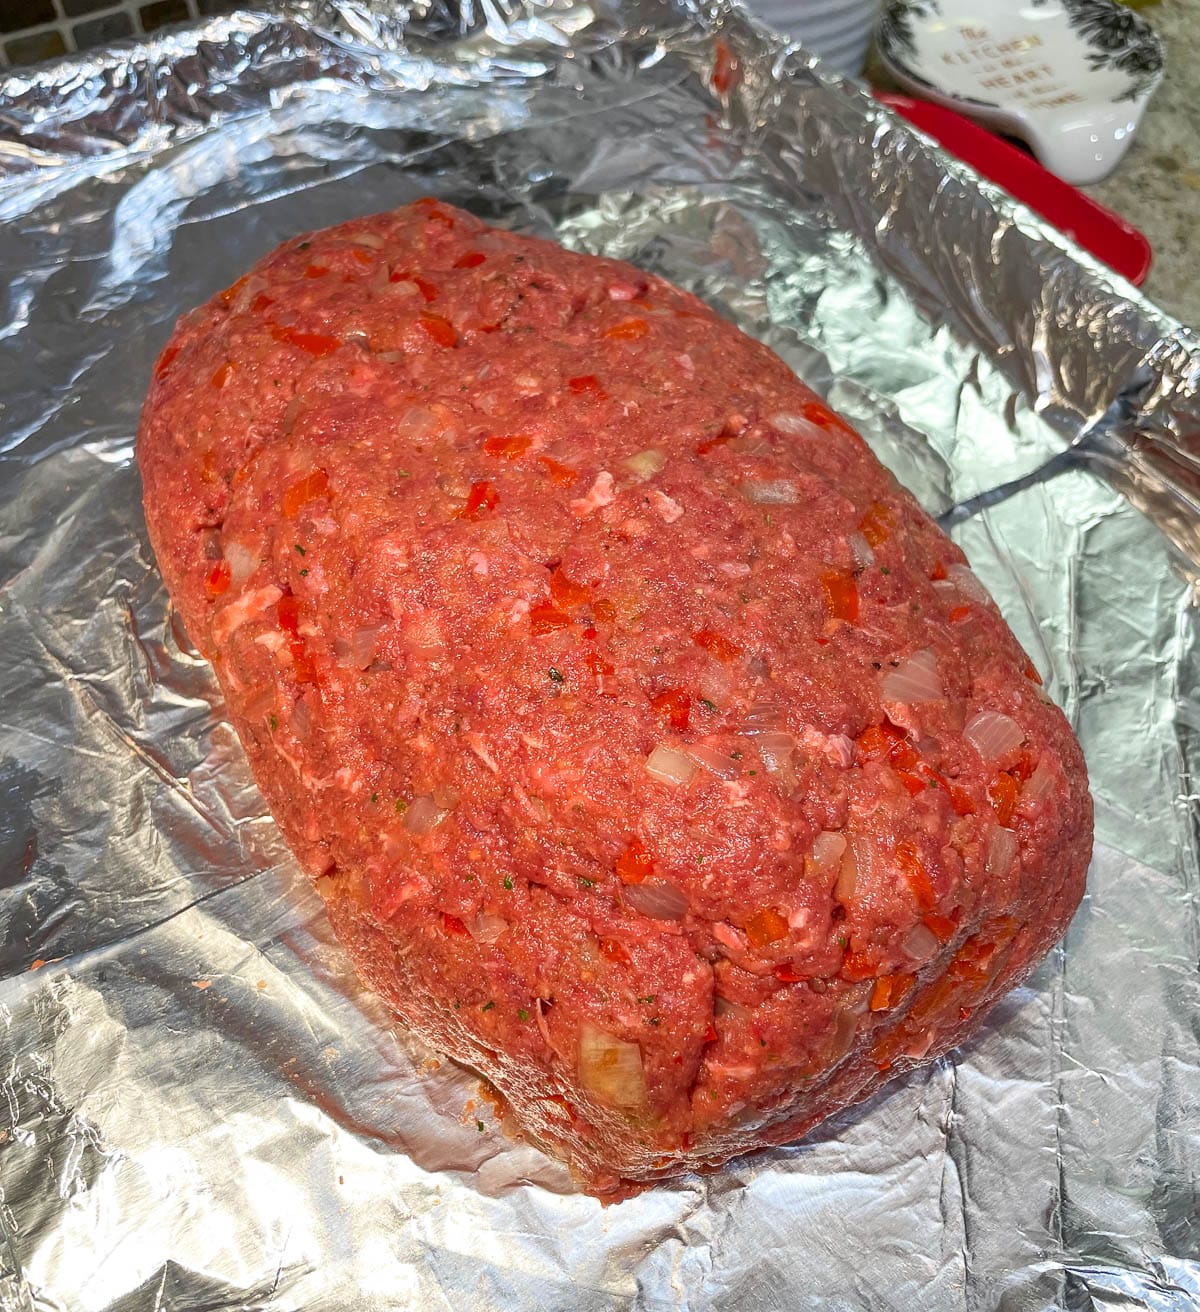 meatloaf on baking sheet